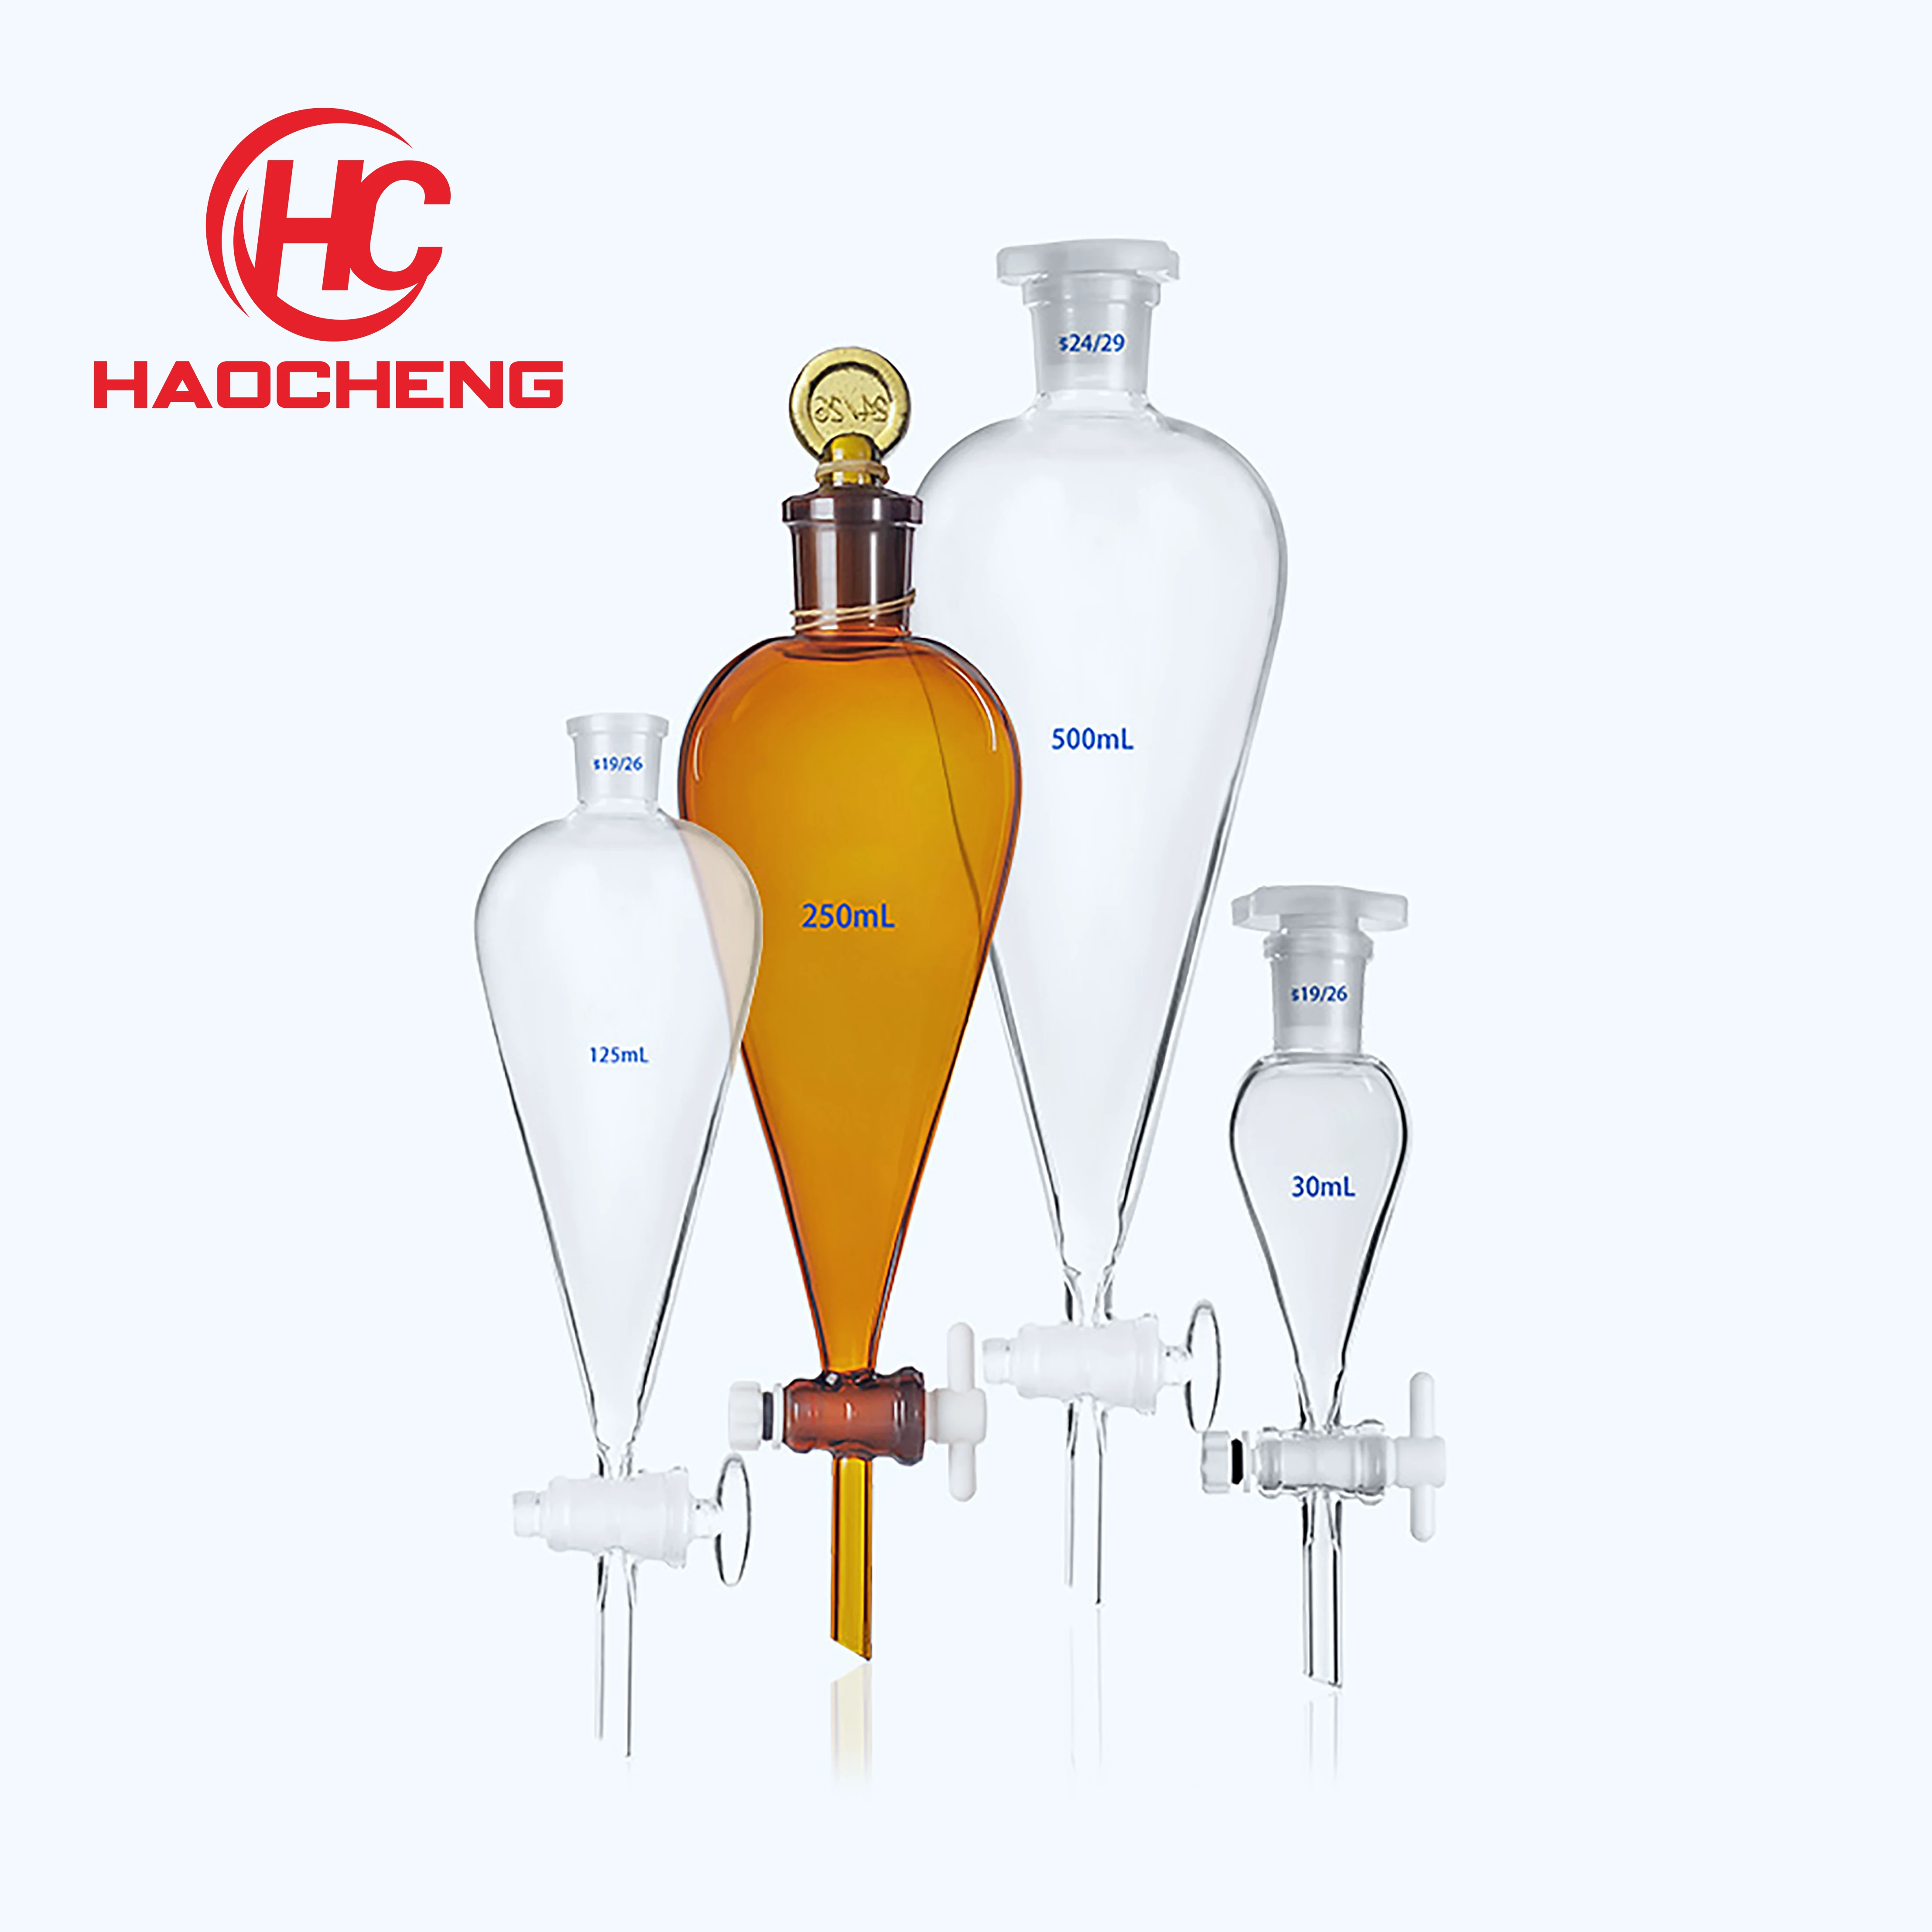 50ml-20000ml separatory funnel glass perfume bar dispenser bottle print logo pear-shaped funnel